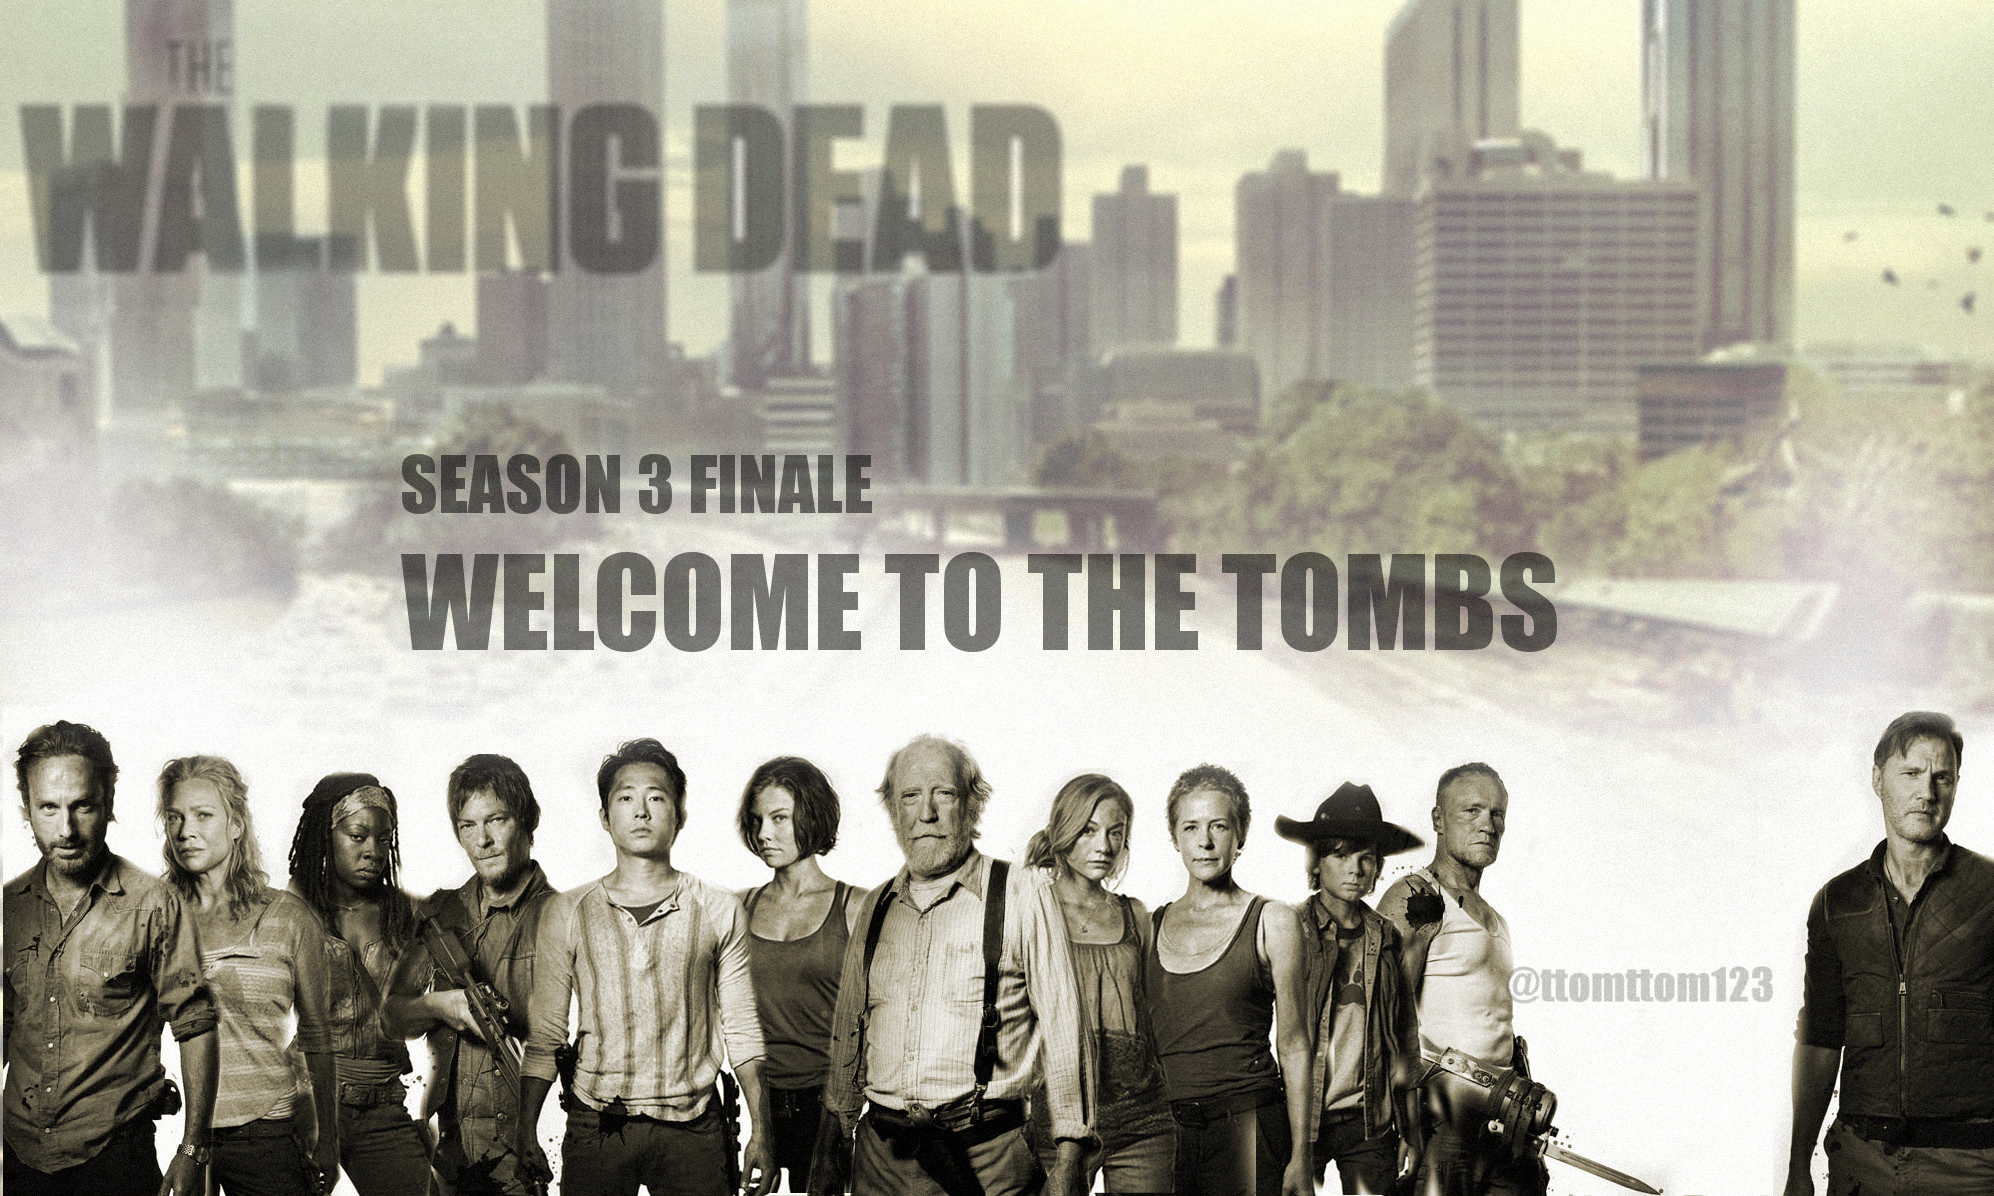 The Walking Dead Season 3 Finale Poster Cast   The Walking Dead Photo